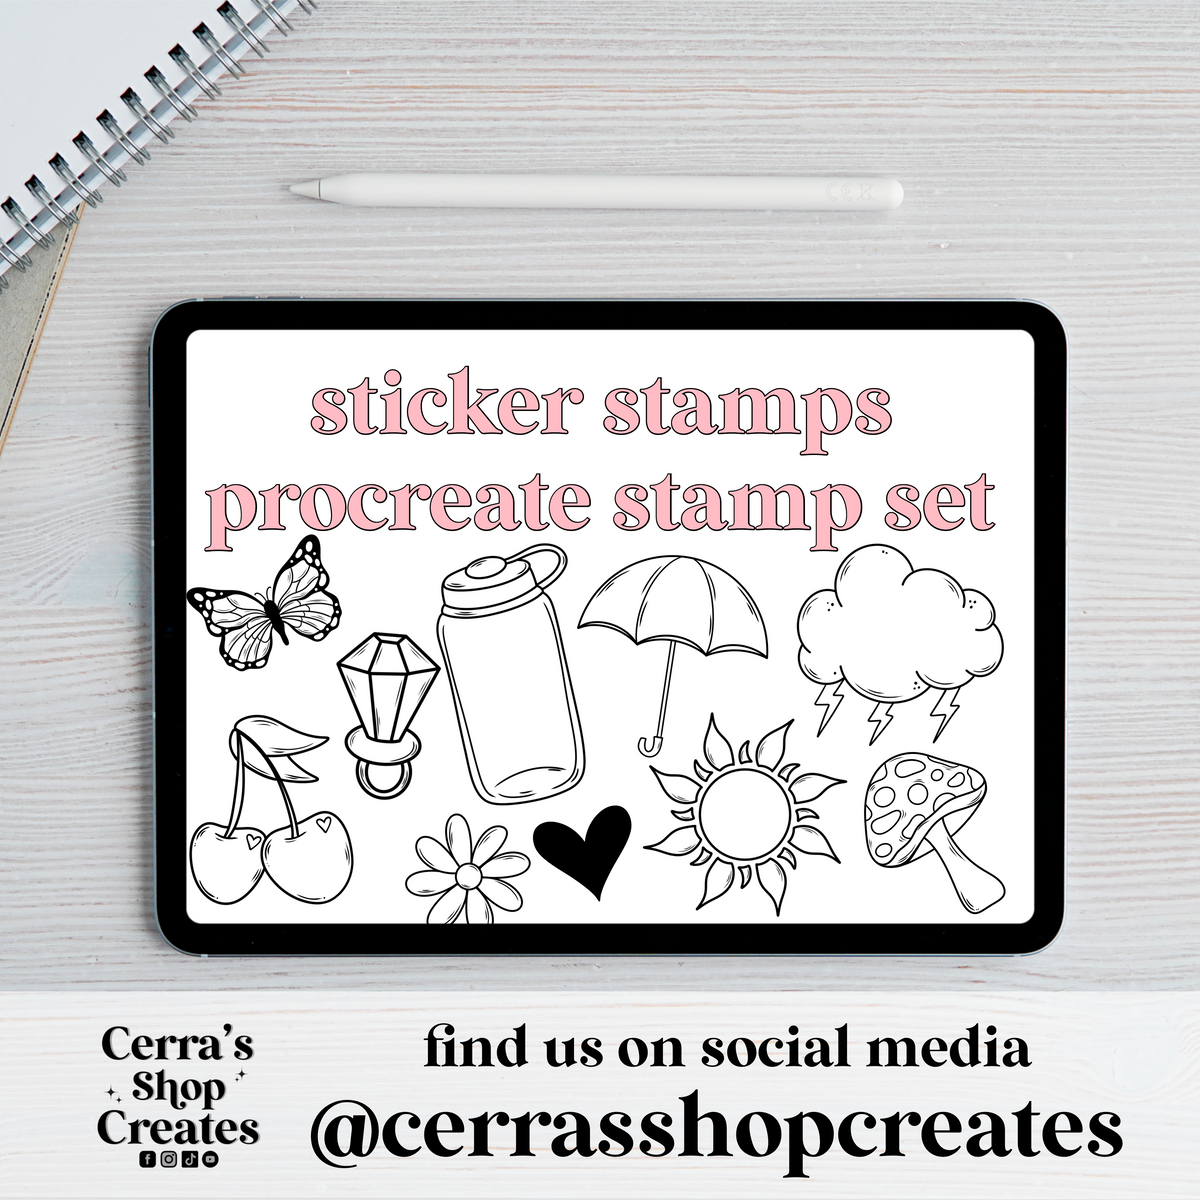 Sticker Stamps Procreate Stamp Set